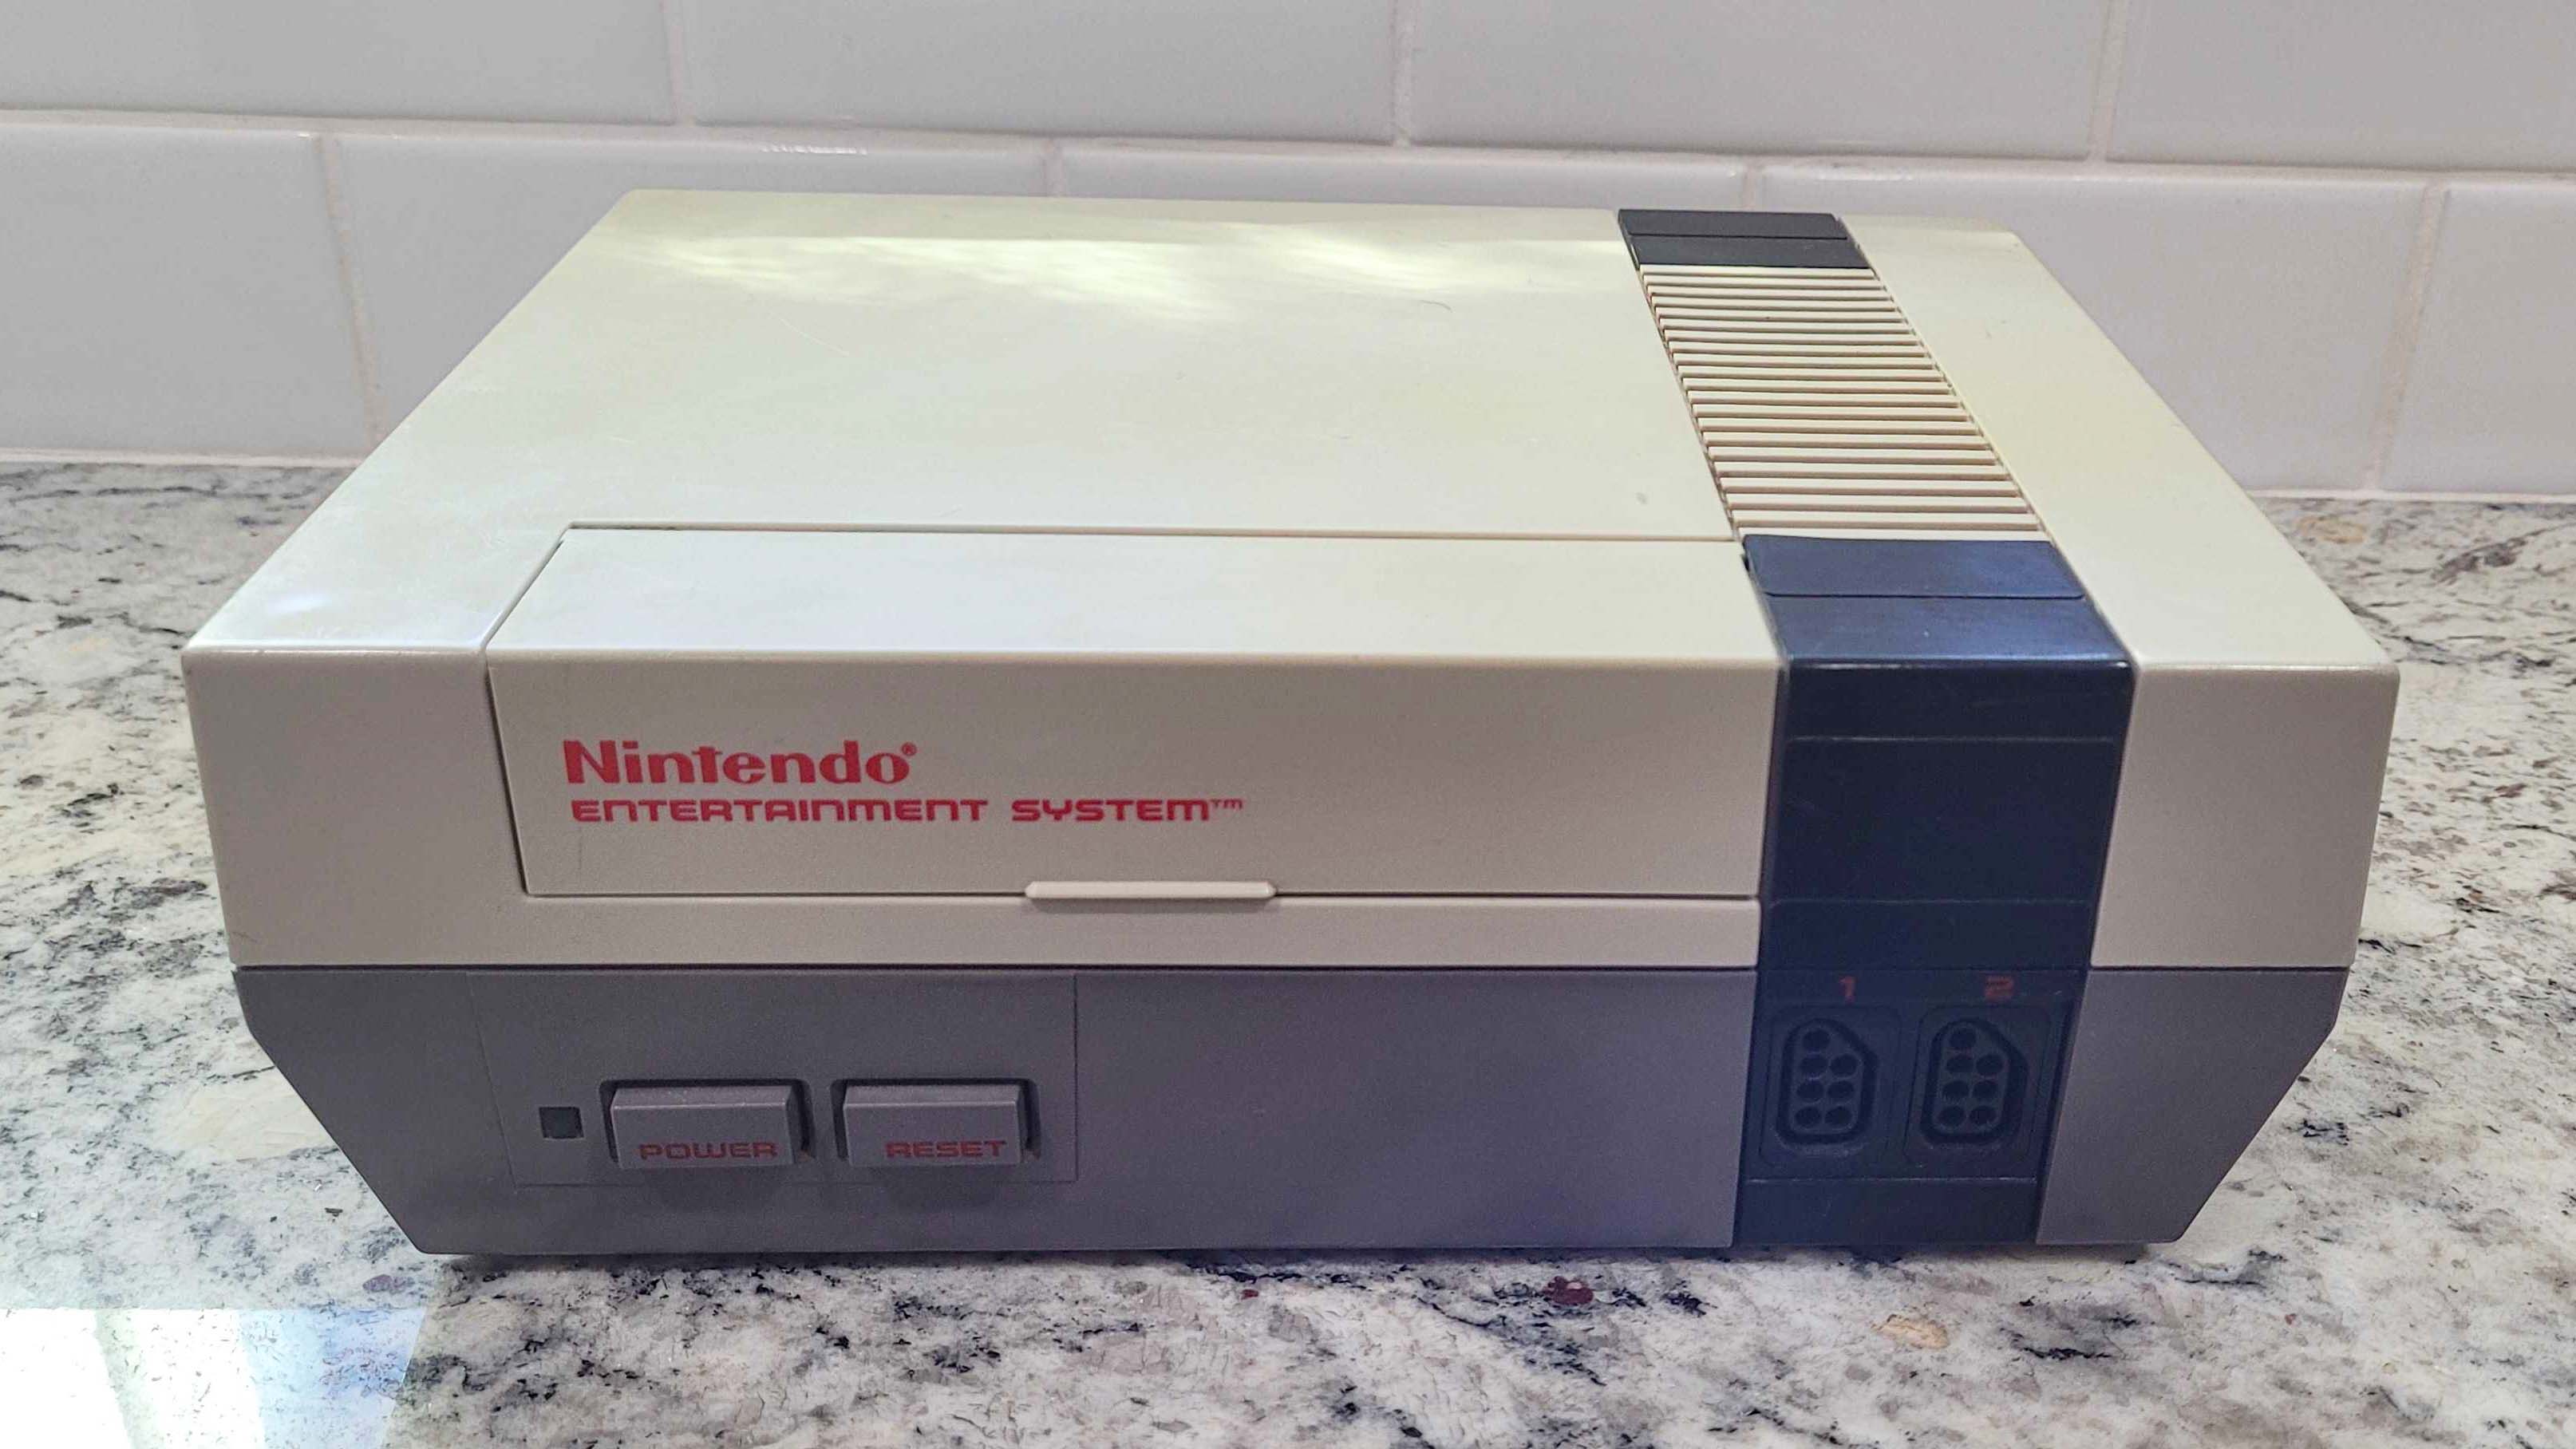 Nintendo Entertainment System (NES) en el mostrador.